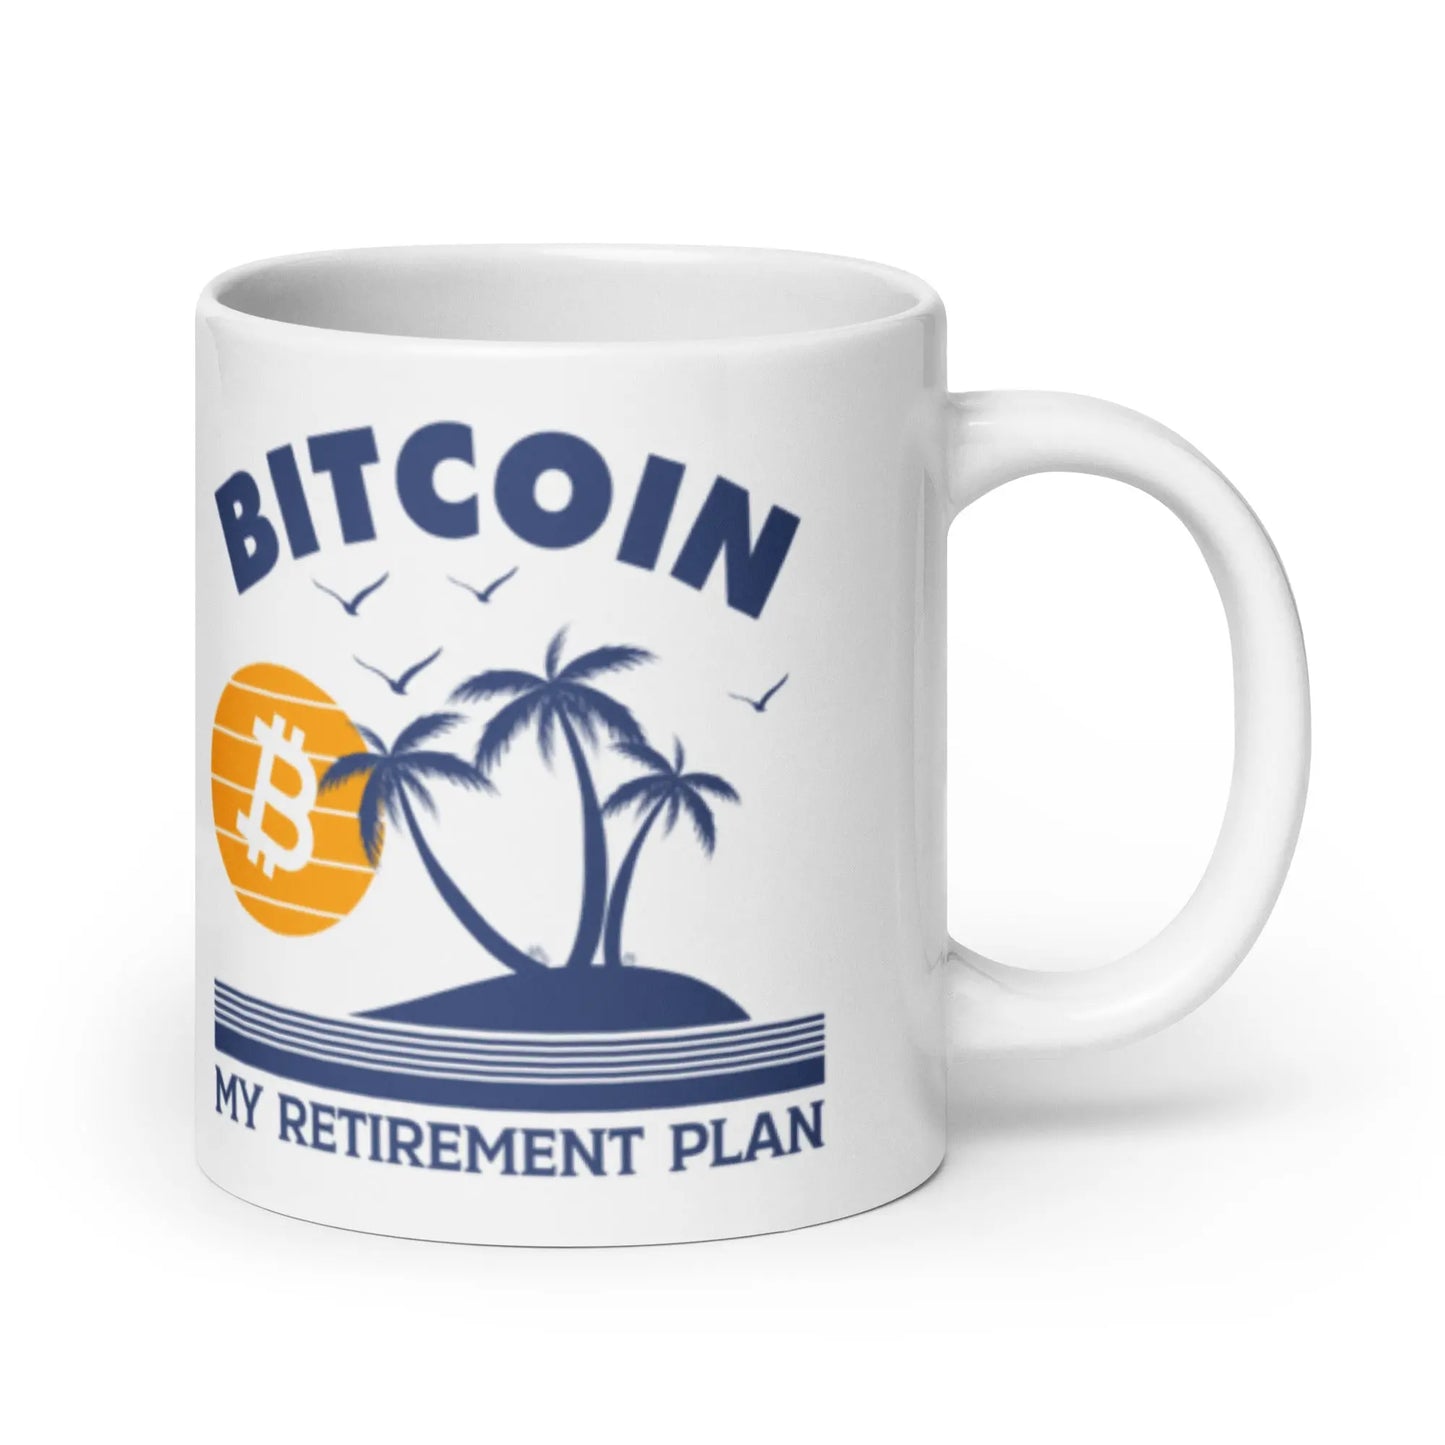 My Retirement Plan - White Glossy Bitcoin Mug